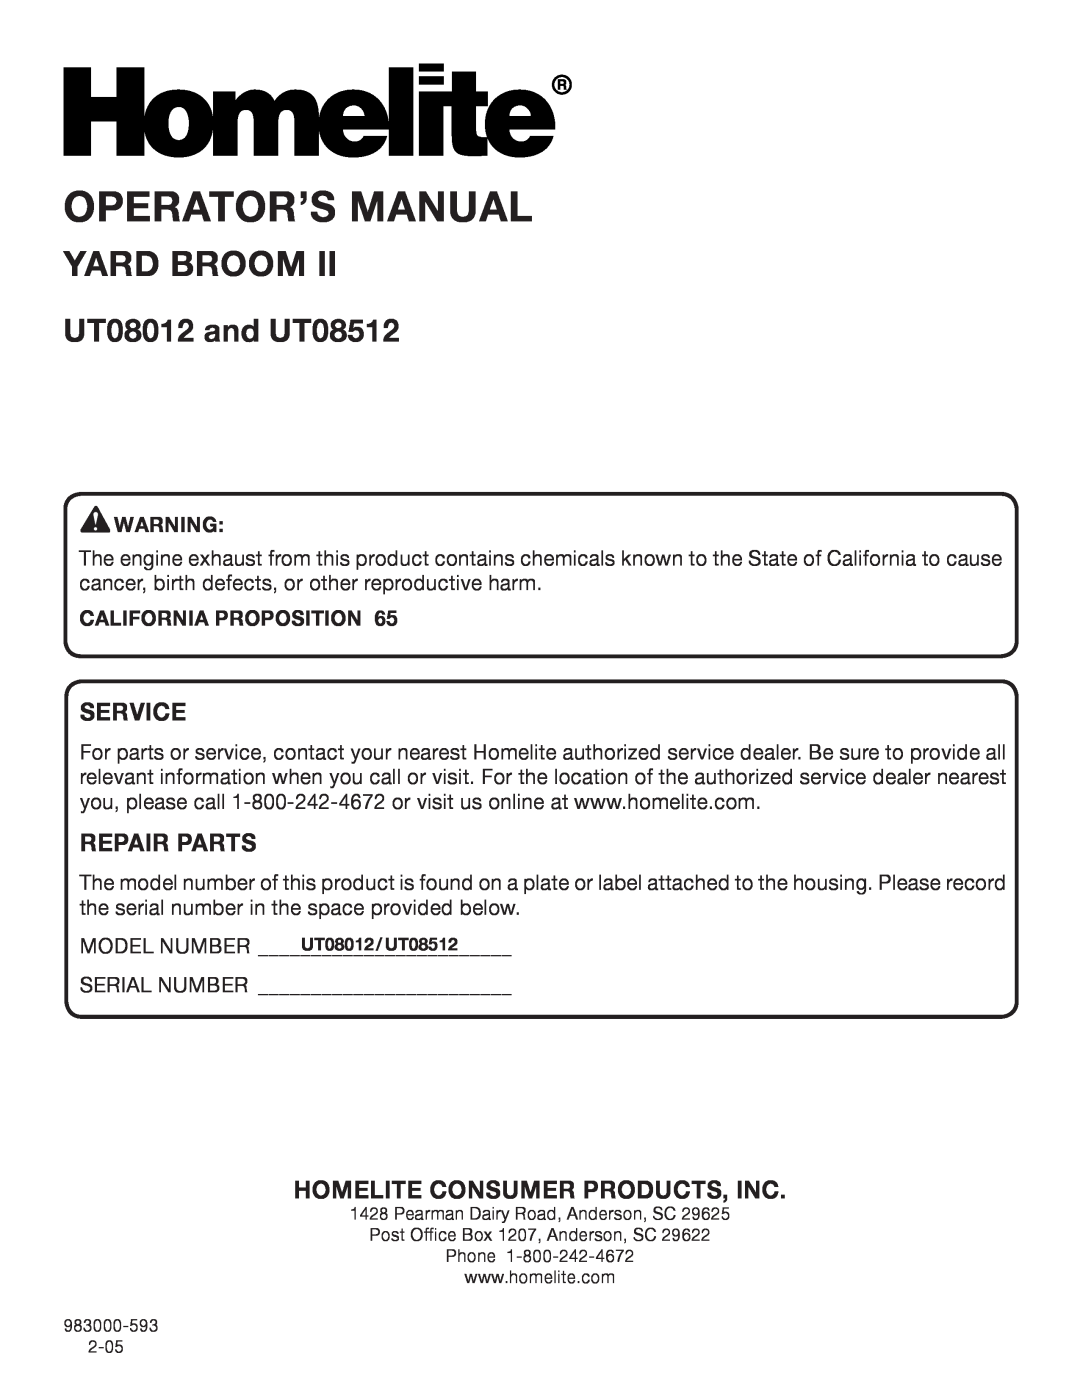 Homelite Operator’S Manual, Yard Broom, UT08012 and UT08512, Service, Repair Parts, Homelite Consumer Products, Inc 